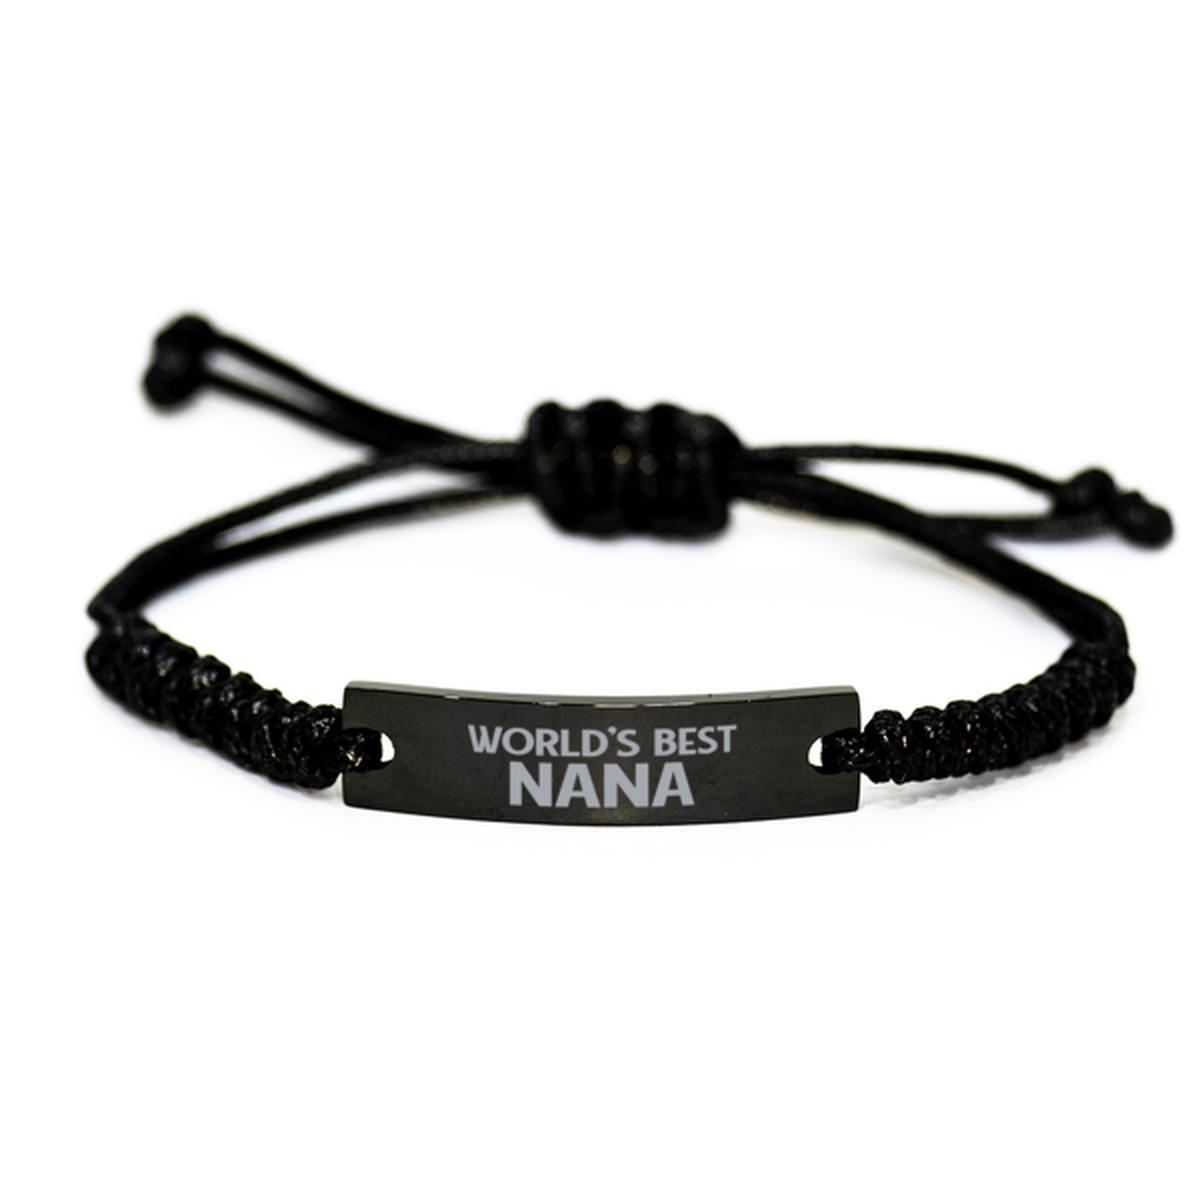 World's Best Nana Gifts, Funny Engraved Rope Bracelet For Nana, Birthday Family Gifts For Women